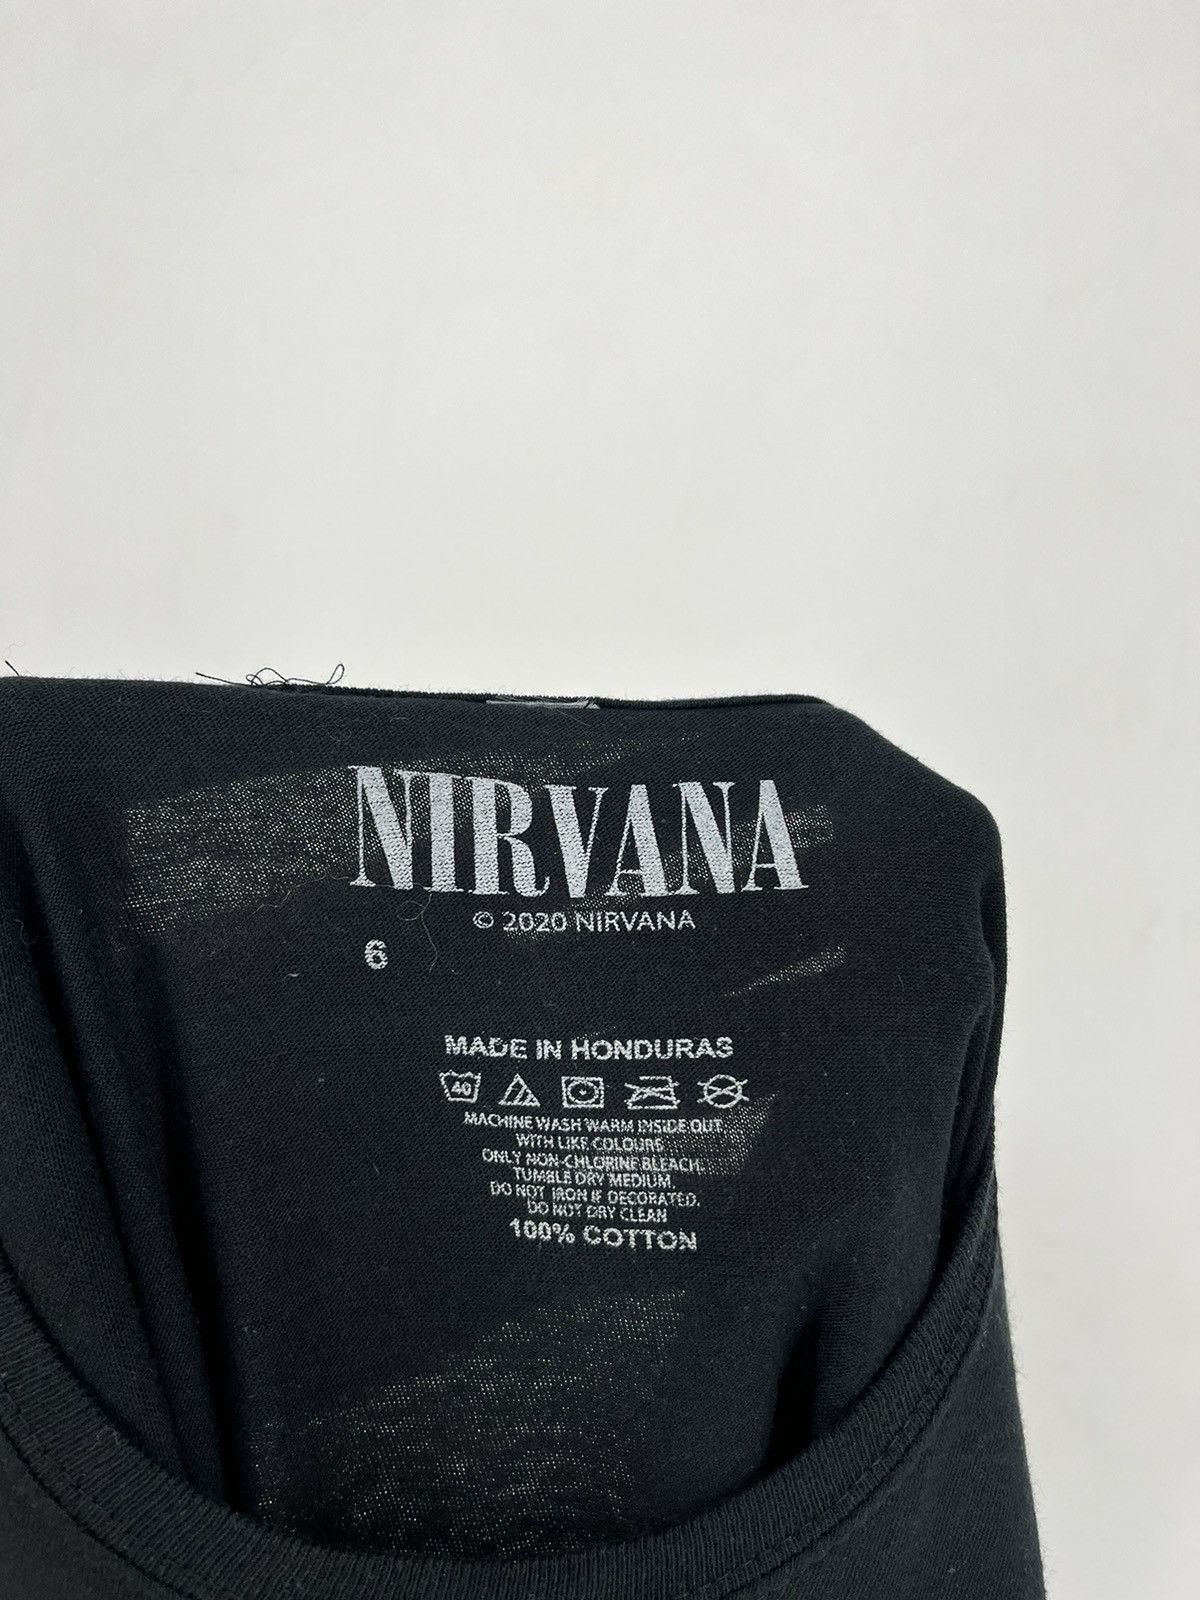 Nirvana Vintage Y2K Nirvana Kurt Cobain Tee Print Band Tour Rock Size US M / EU 48-50 / 2 - 5 Preview